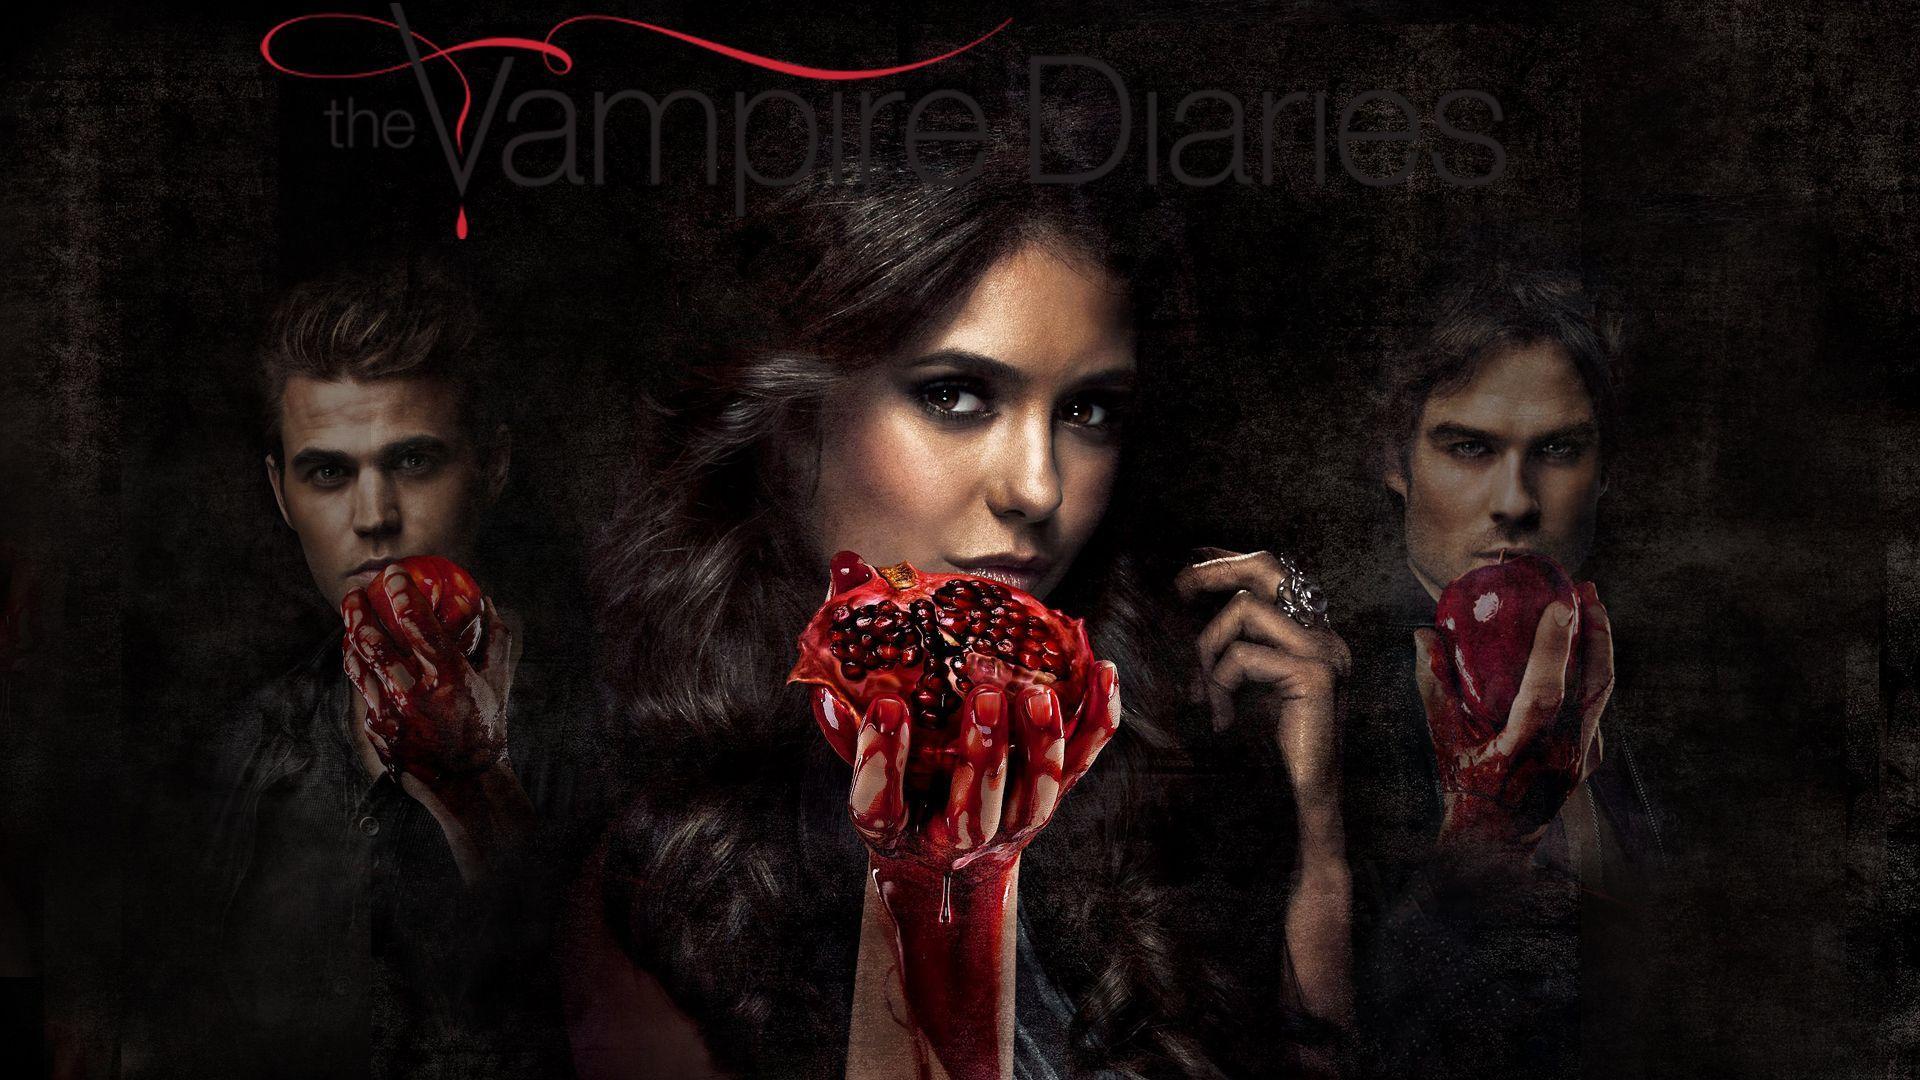 The Vampire Diaries 3 Wallpaper